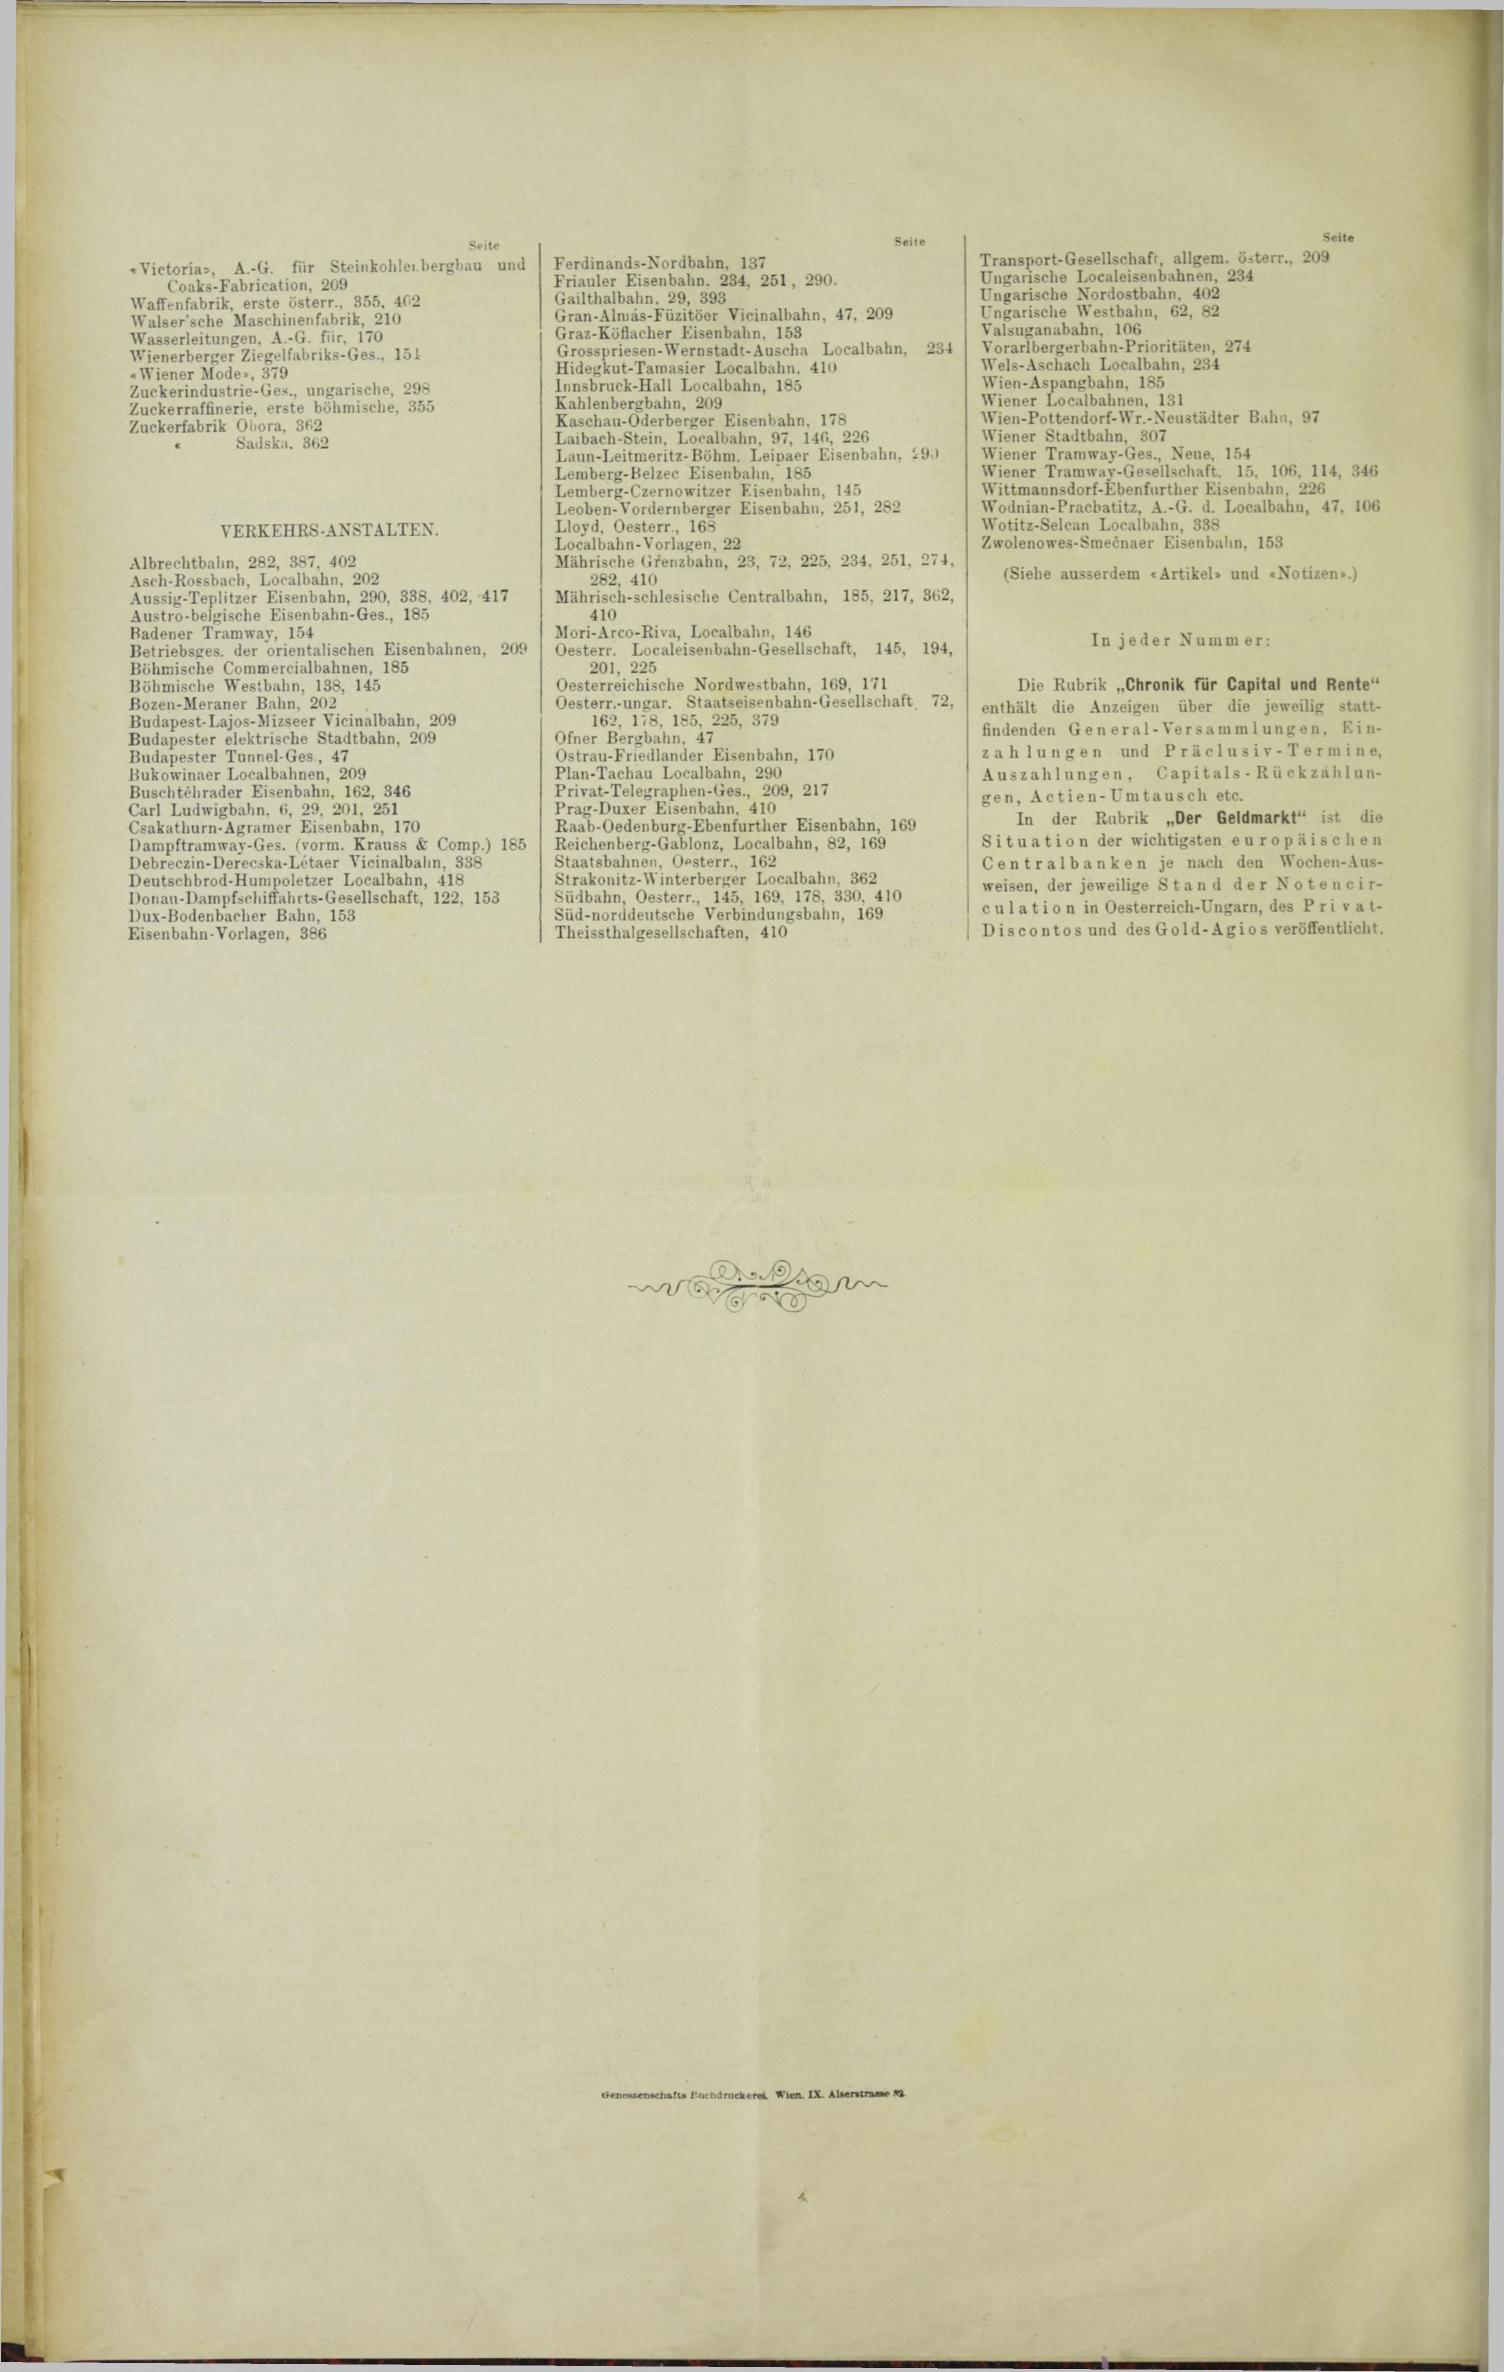 Der Tresor 25.05.1893 - Seite 12